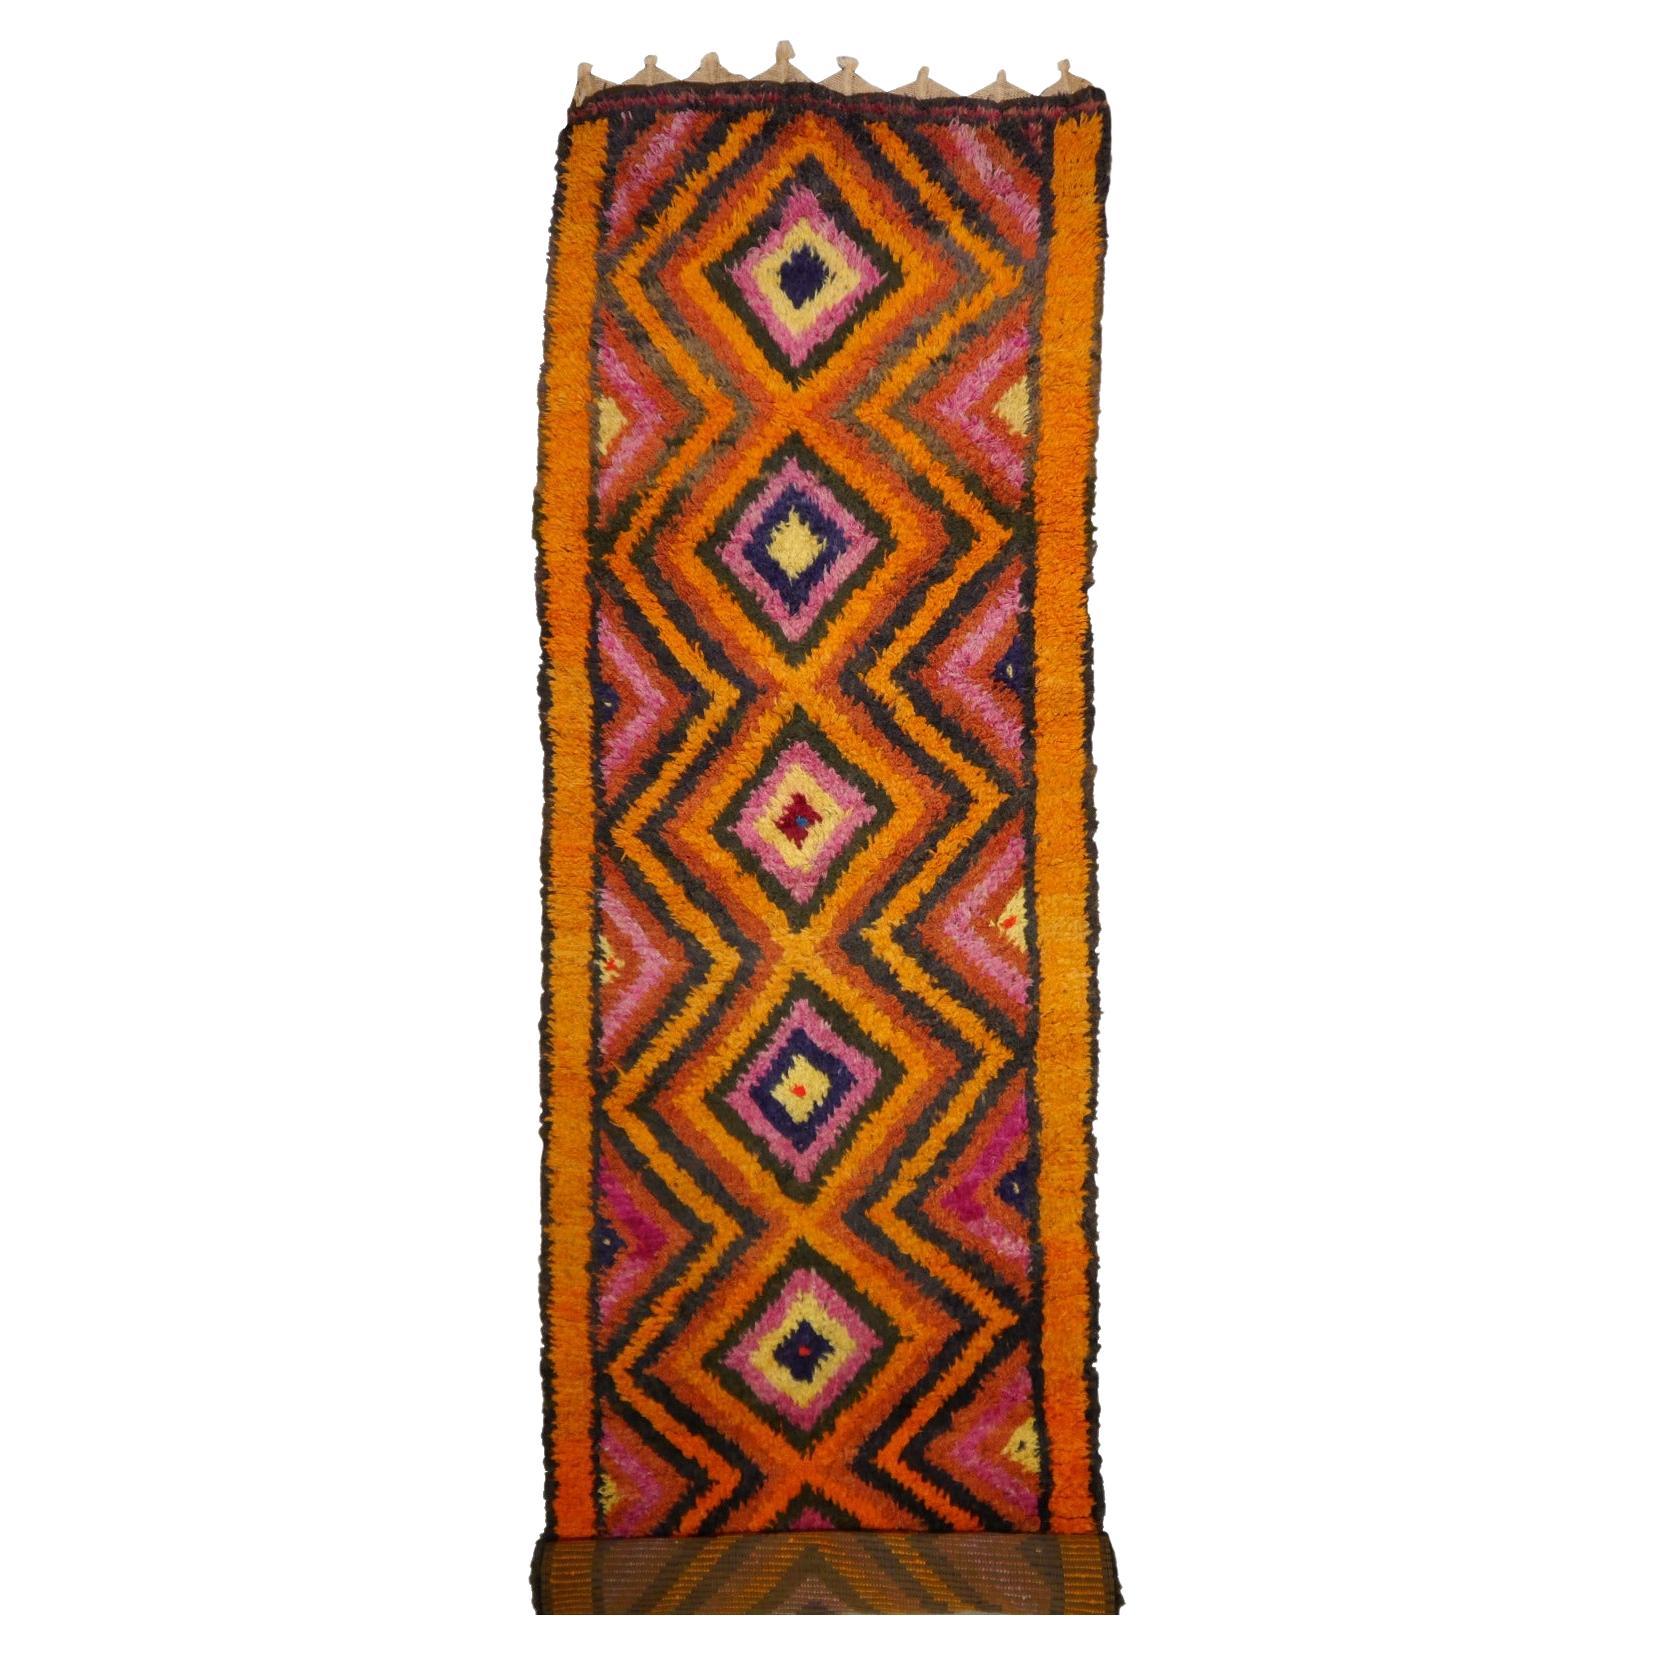 Türkischer Tulu-Teppich in Orange, Lila und Braun im Vintage-Stil